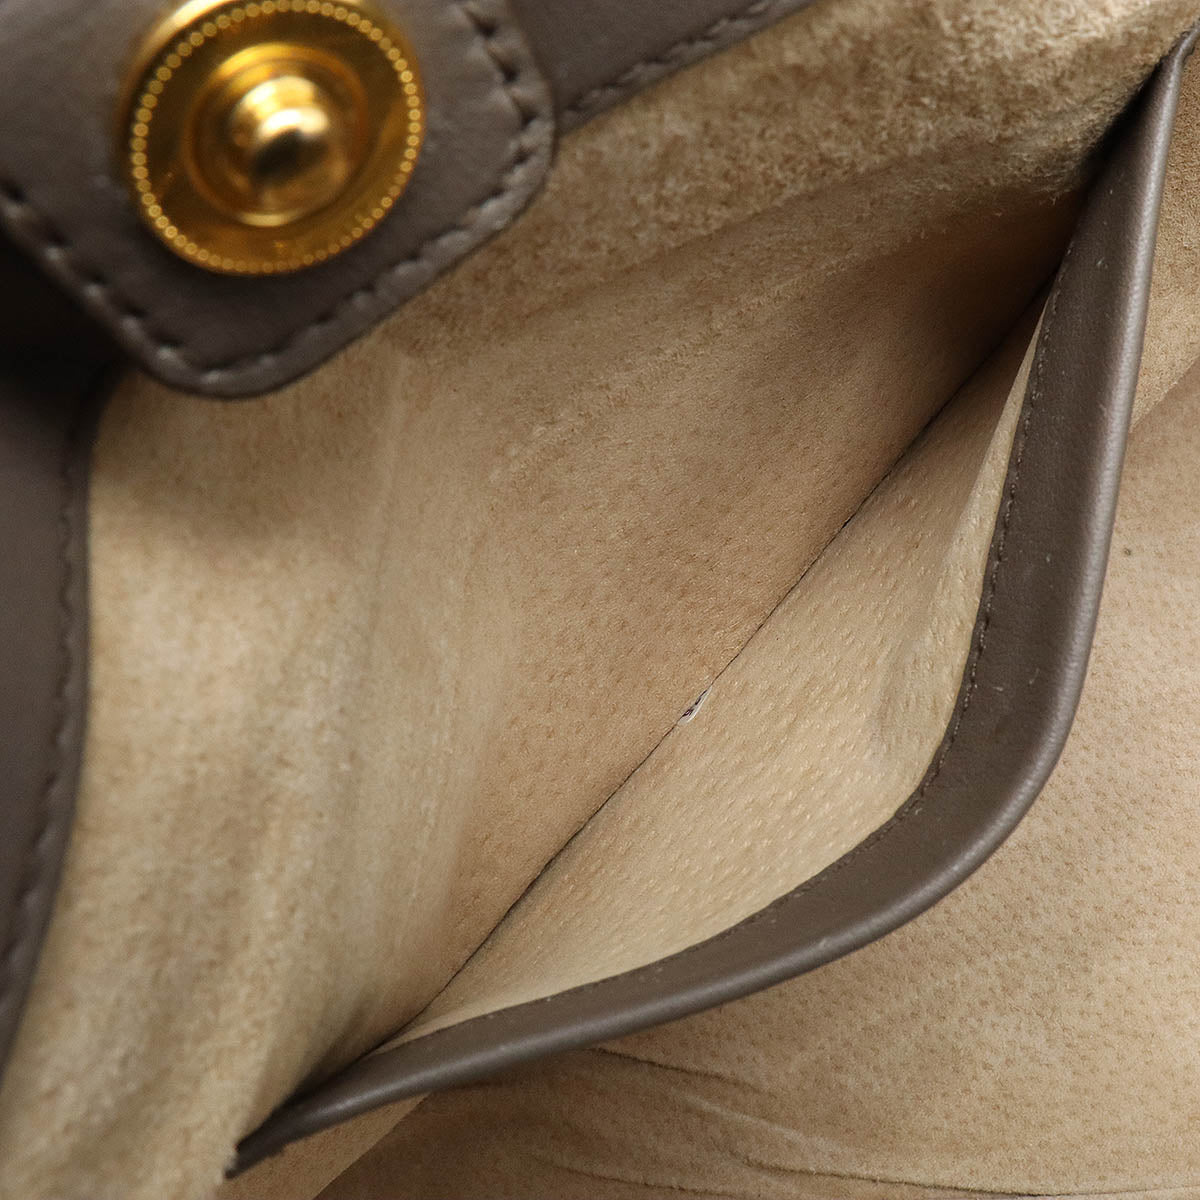 PRADA Soft Calf Leather Handbag Shoulder Bag Grey BN2103